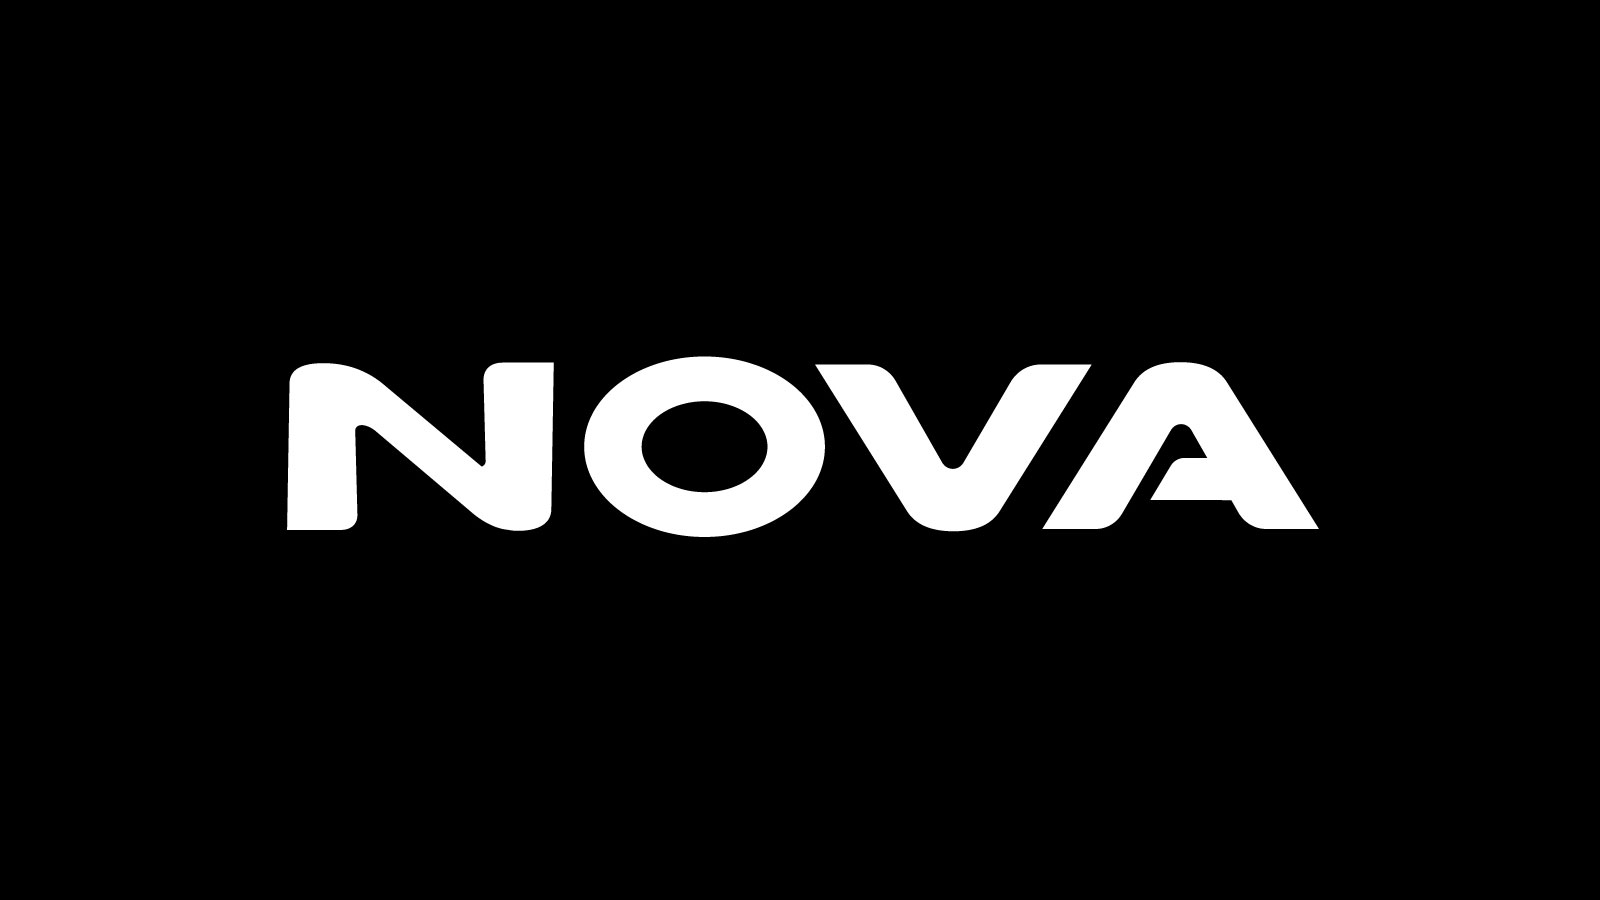 , Η Forthnet ανακοίνωσε σήμερα τη μετονομασία της εταιρείας σε Nova